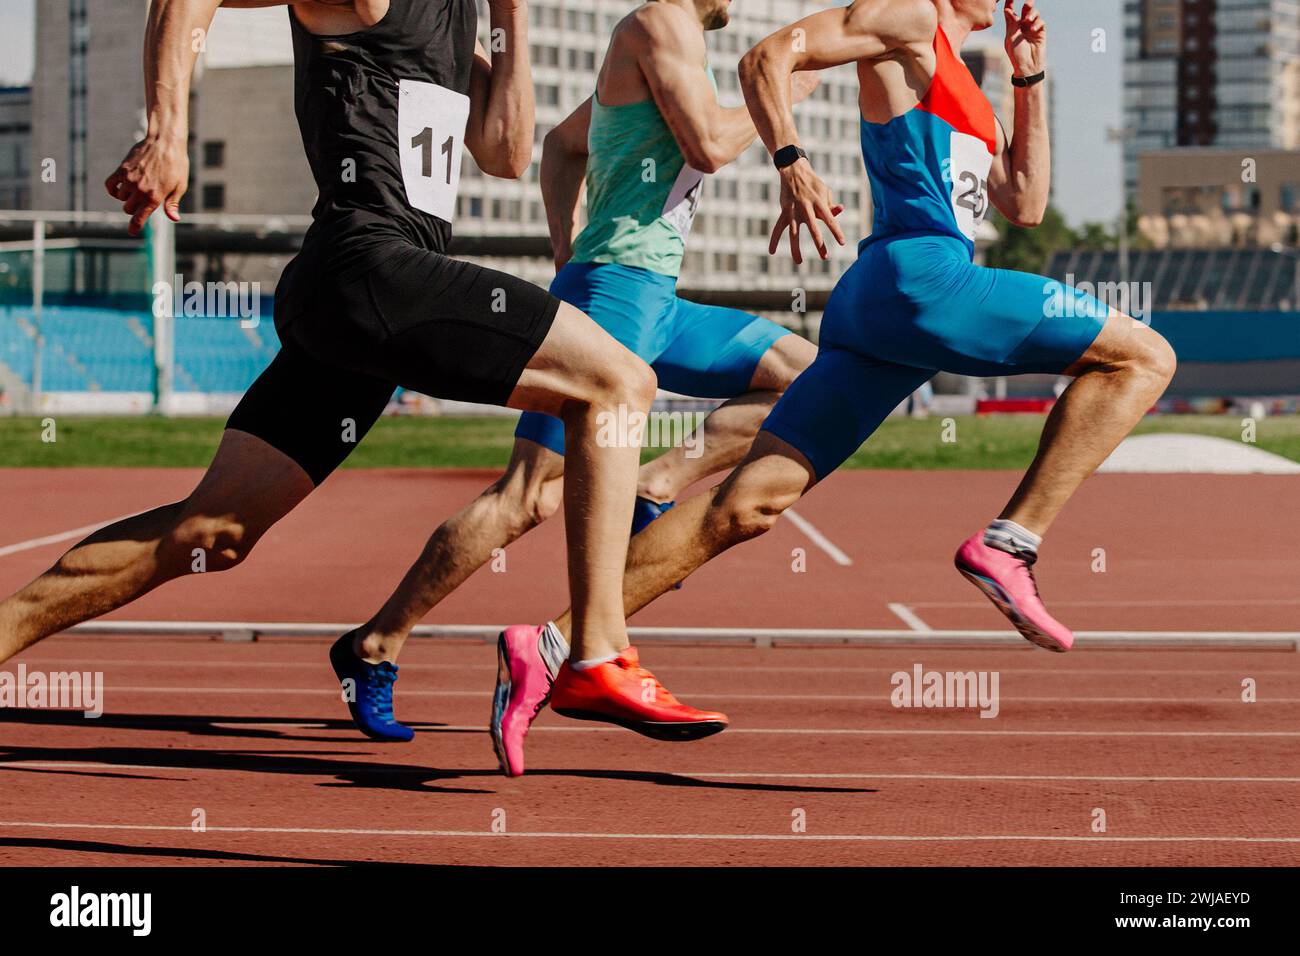 tre atleti maschi che corrono su pista rossa, i muscoli sono tesi, gareggiano ferocemente Foto Stock